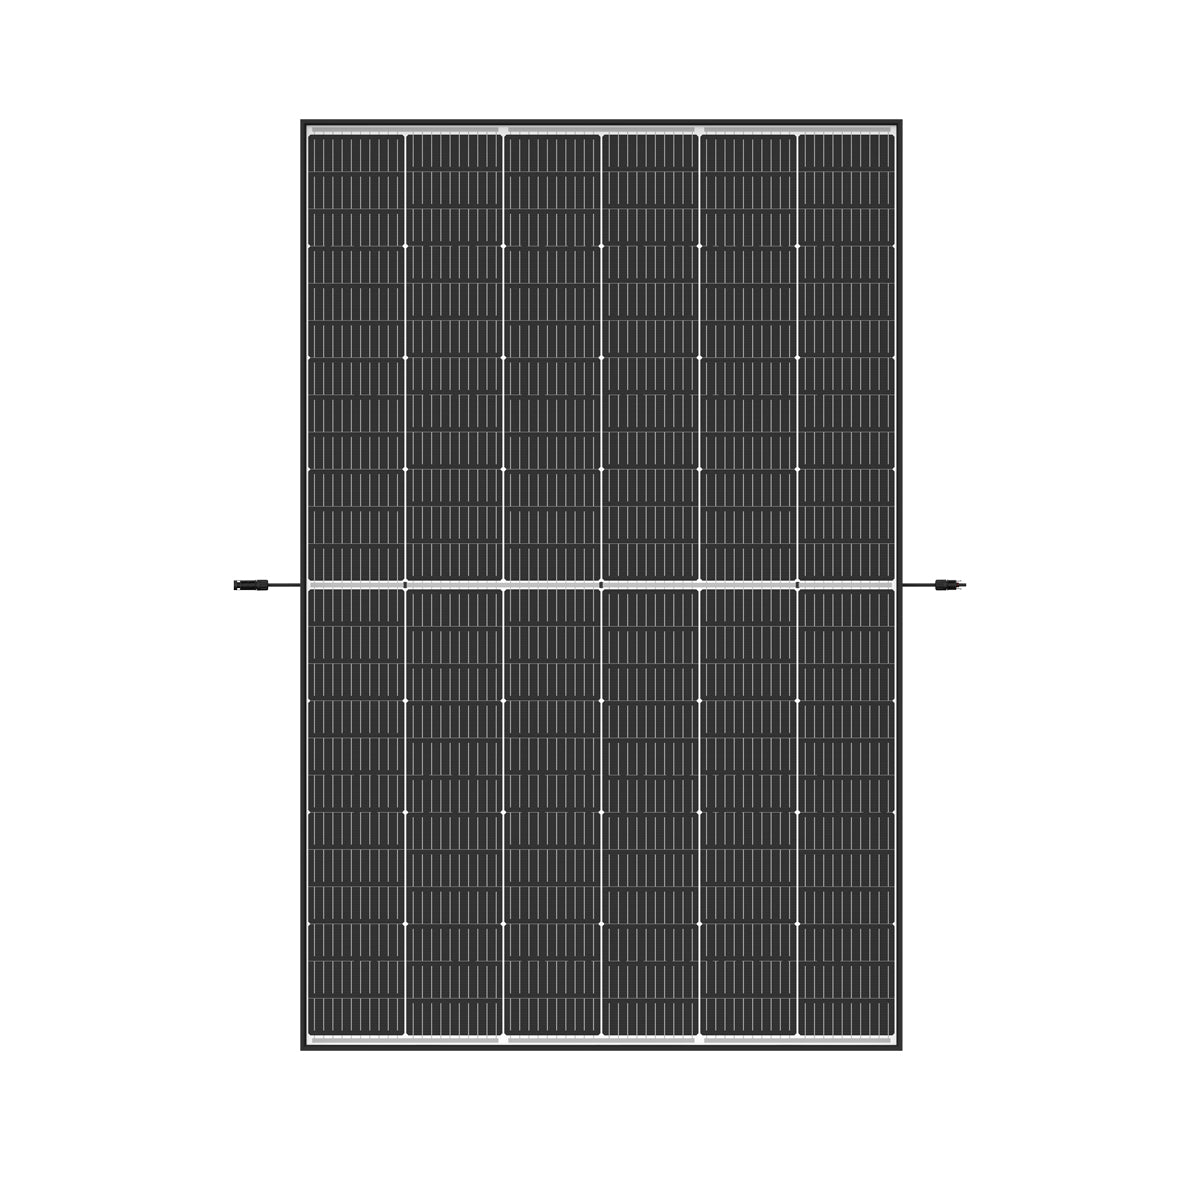 Trina Solar Vertex S Glas / Glas TSM-435NEG9R.28 | Black frame